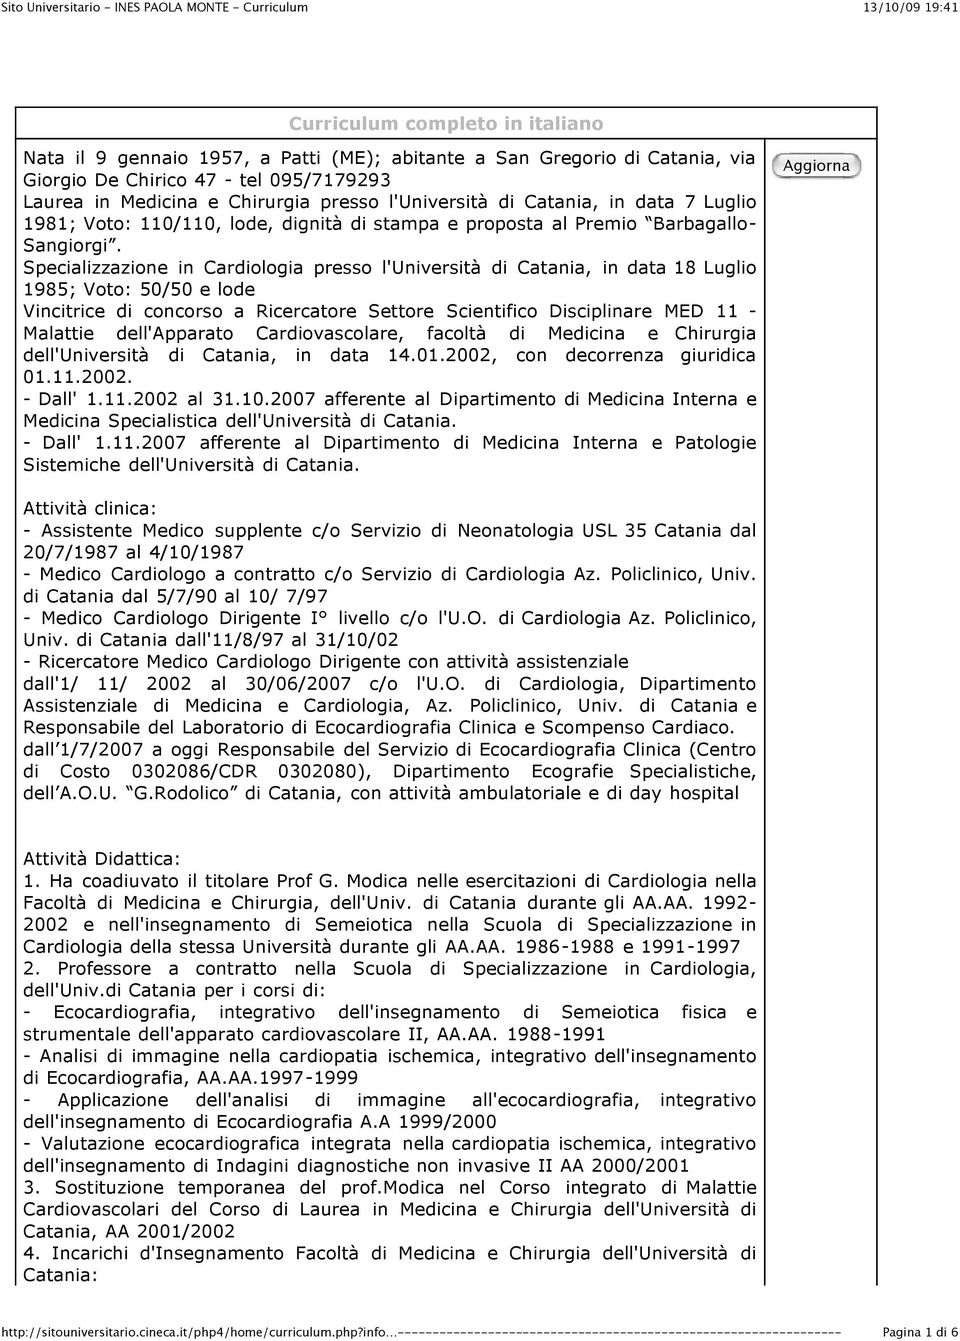 Specializzazione in Cardiologia presso l'università di Catania, in data 18 Luglio 1985; Voto: 50/50 e lode Vincitrice di concorso a Ricercatore Settore Scientifico Disciplinare MED 11 - Malattie